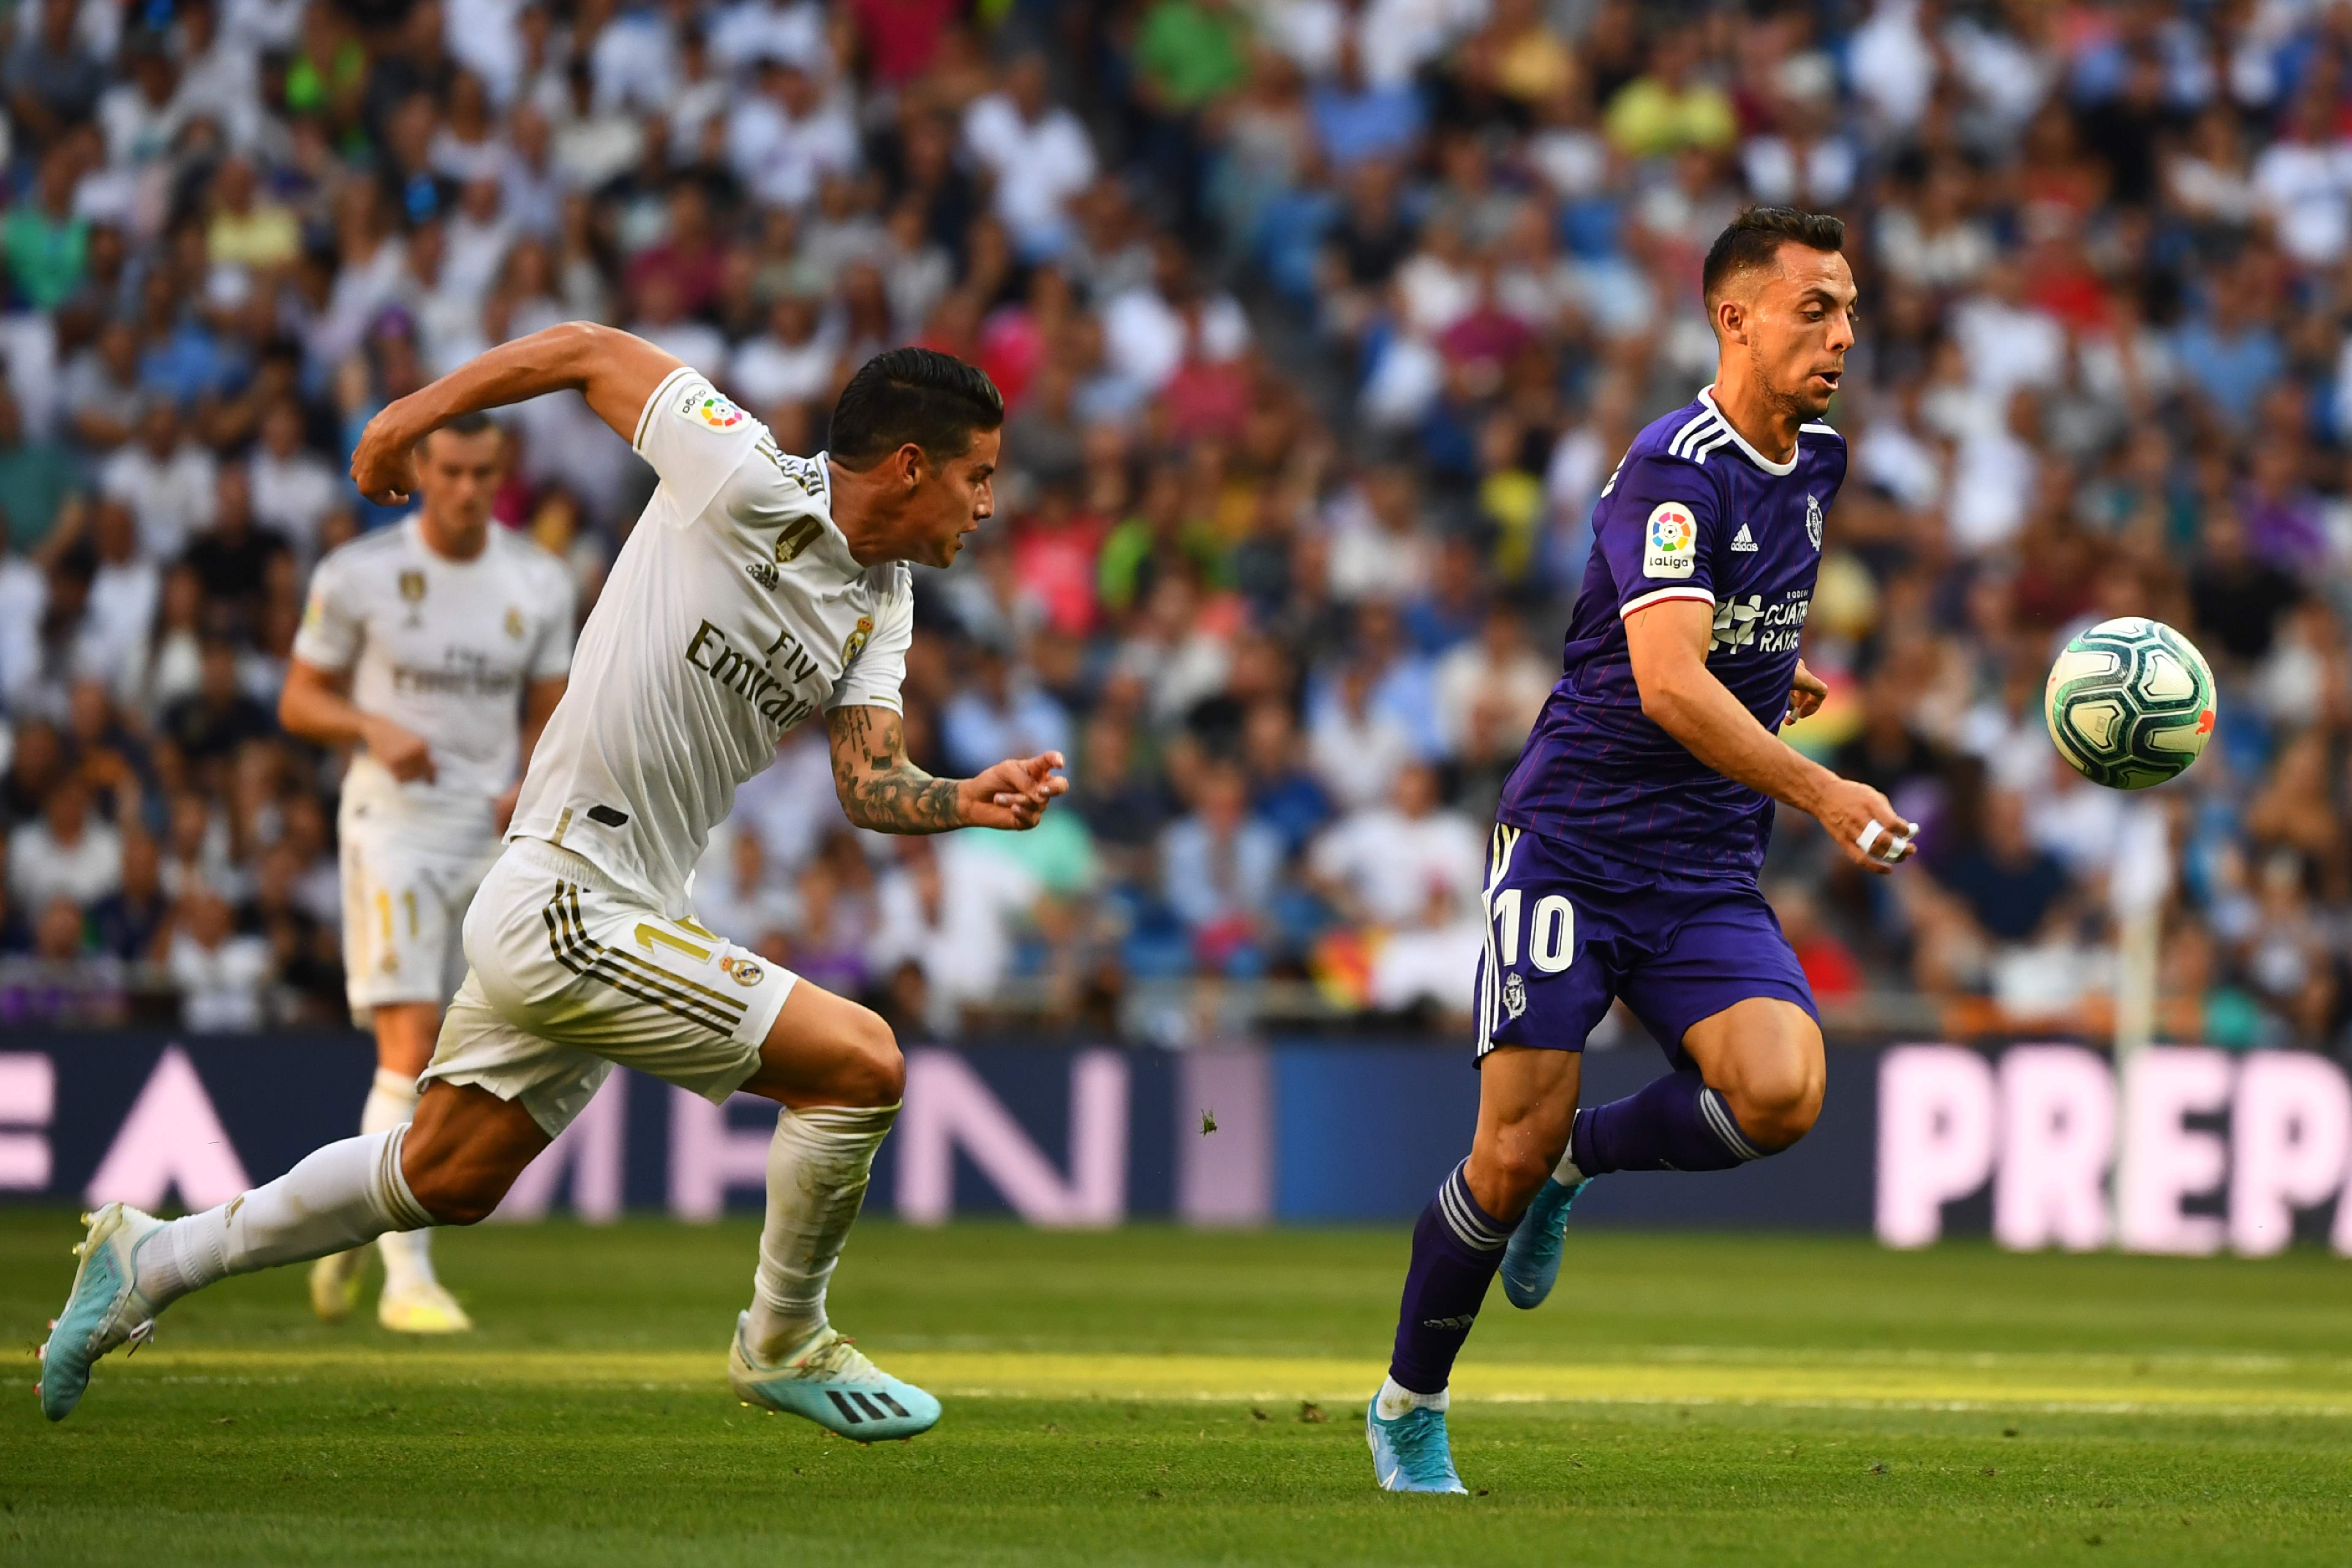 EN DIRECTO | Real Madrid vs Valladolid – Prensa Libre